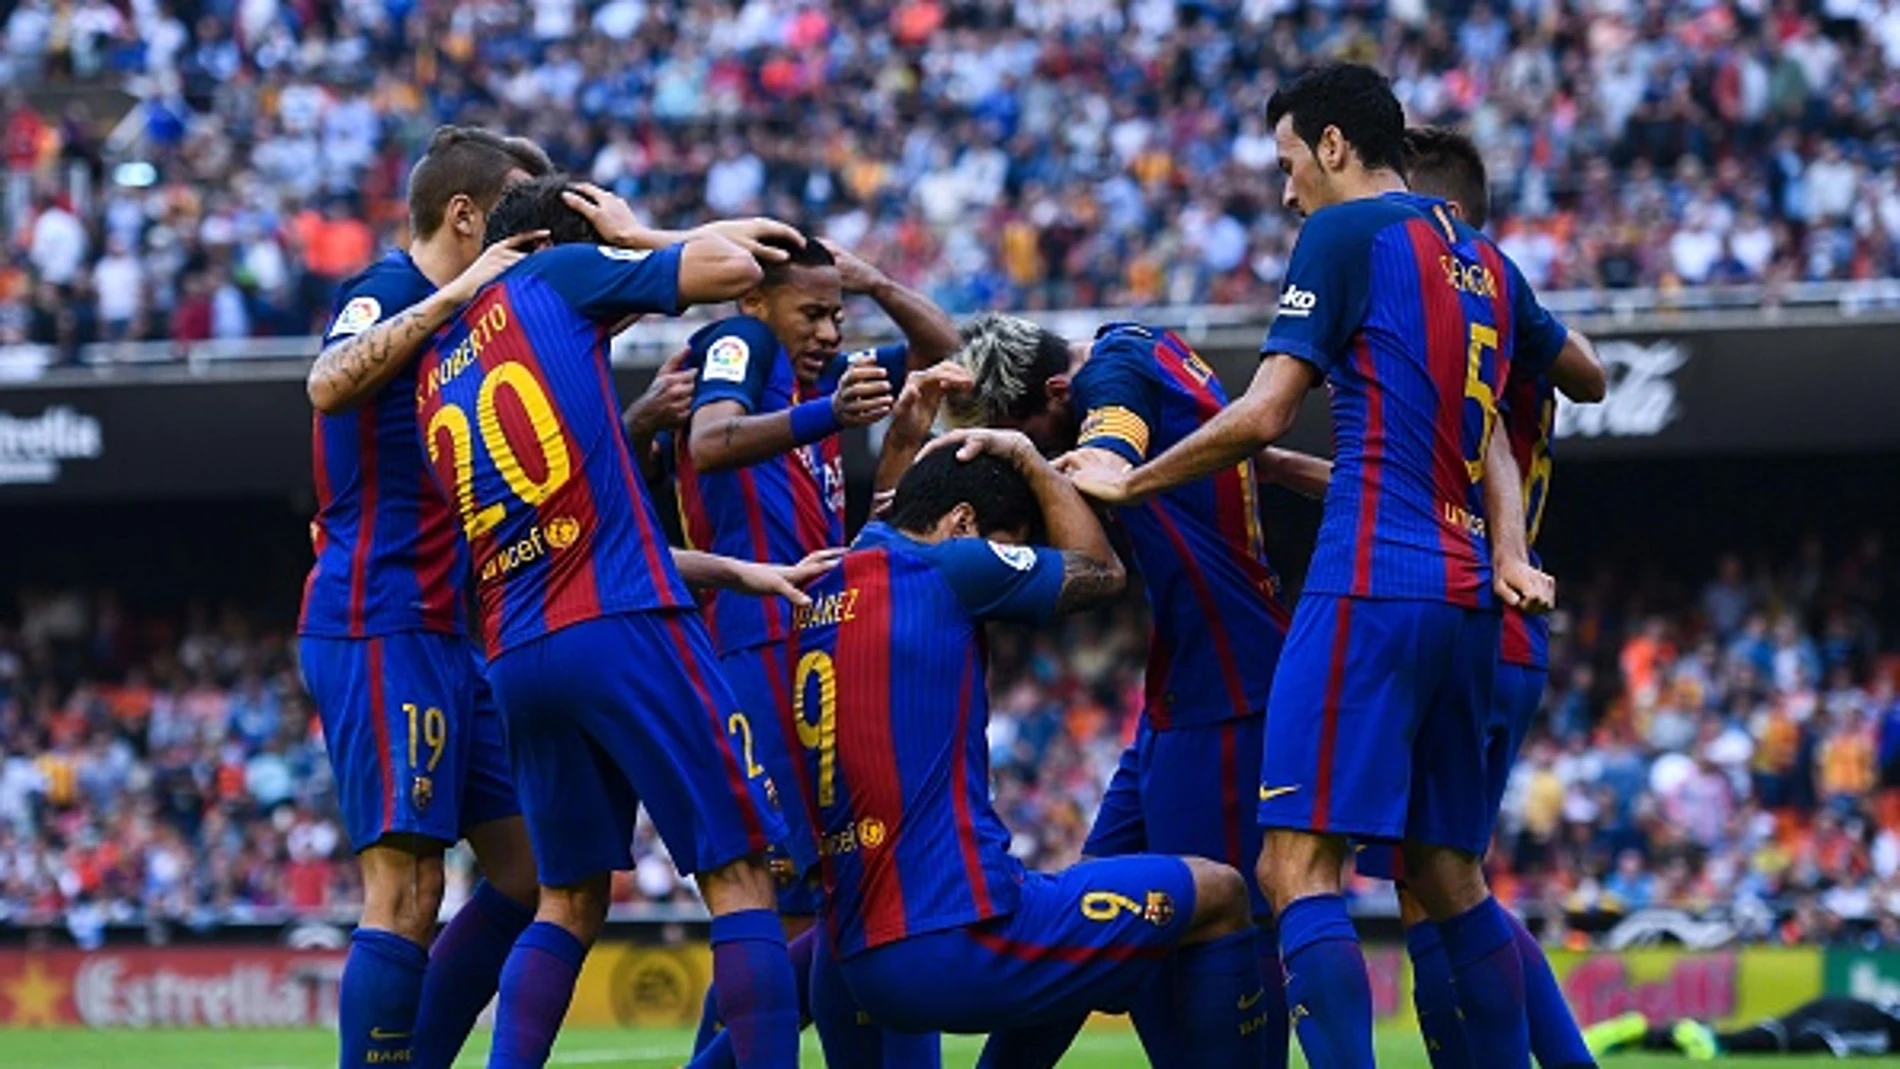 Momento del impacto de una botella de agua contra los jugadores del Barcelona